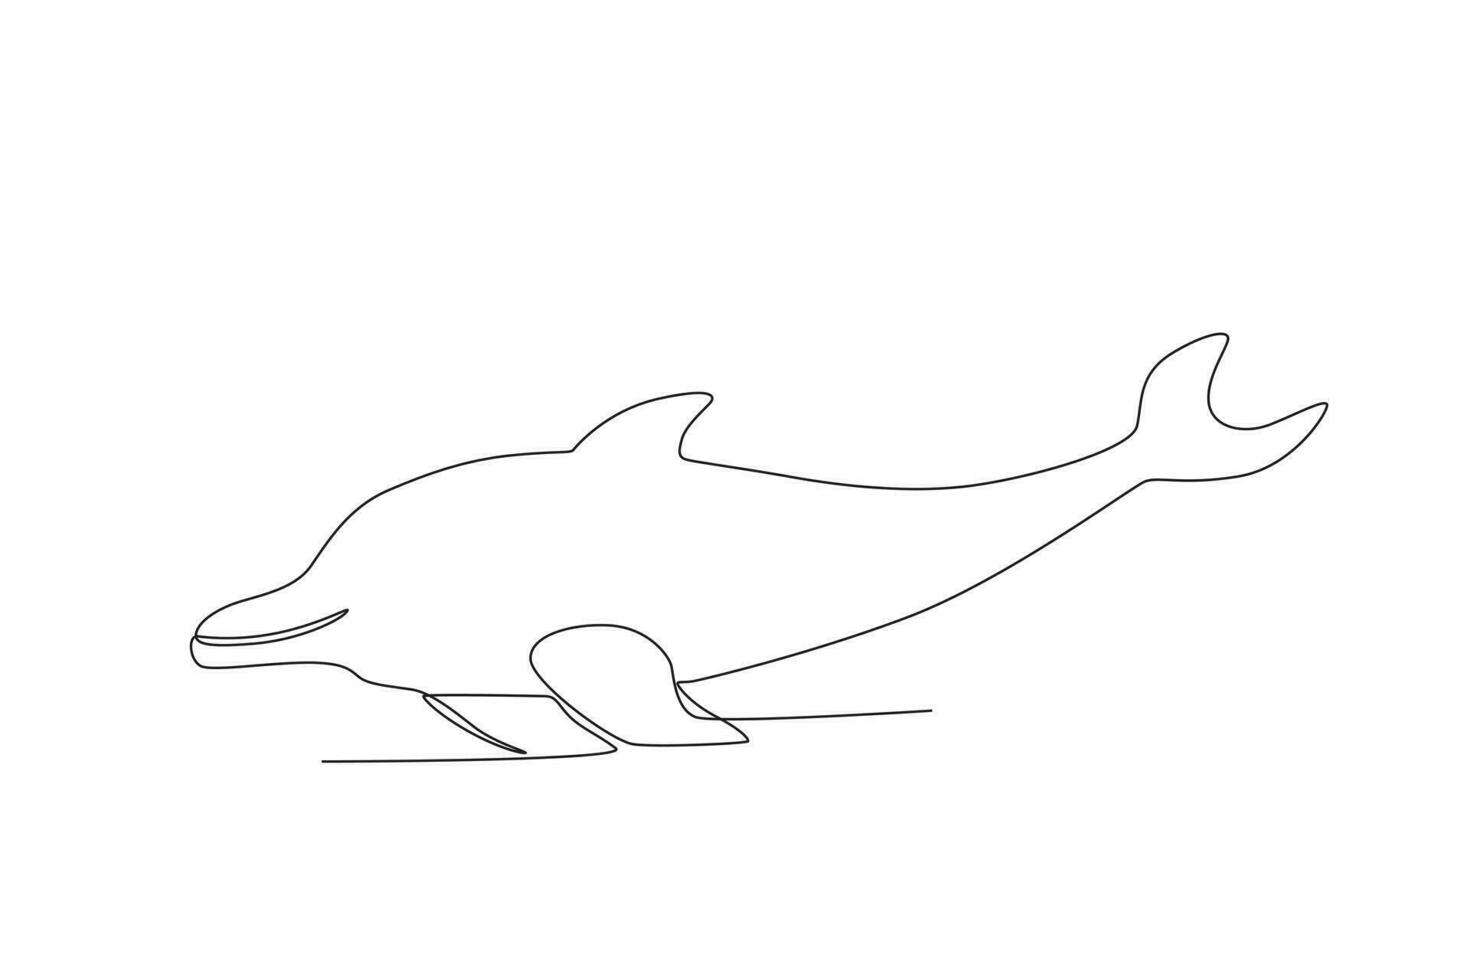 soltero uno línea dibujo de un delfín. continuo línea dibujar diseño gráfico vector ilustración.